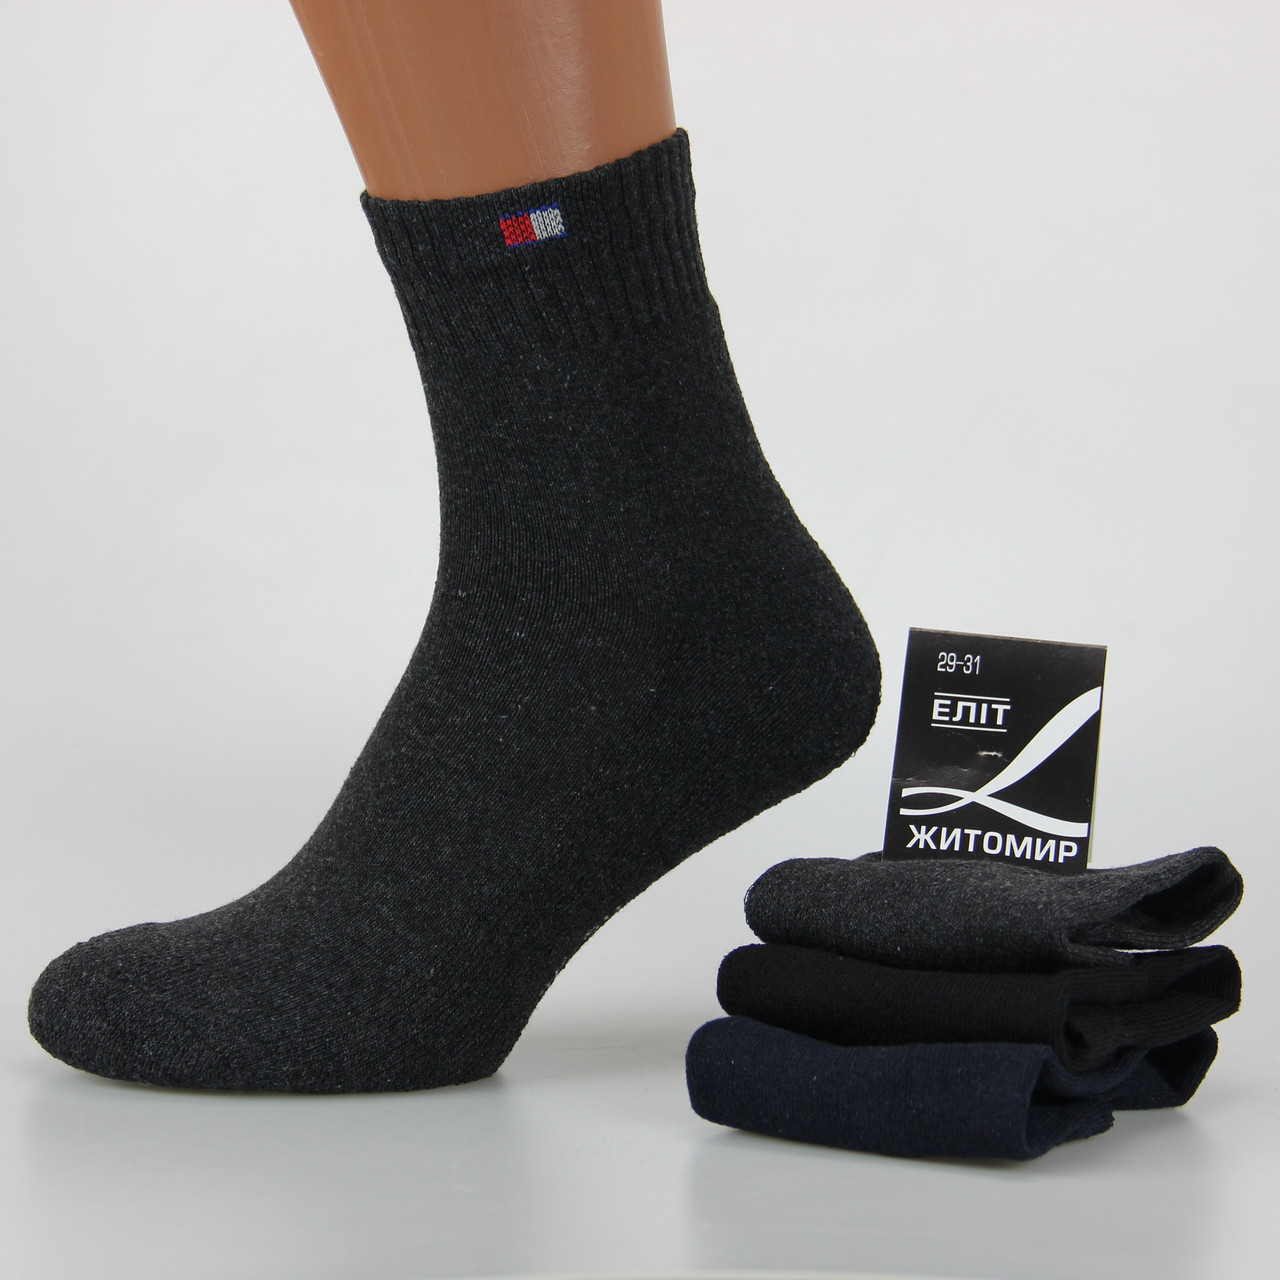 Шкарпетки чоловічі з махровою стопою середні 29-31 розмір (43-46 взуття) Житомир, темні кольори